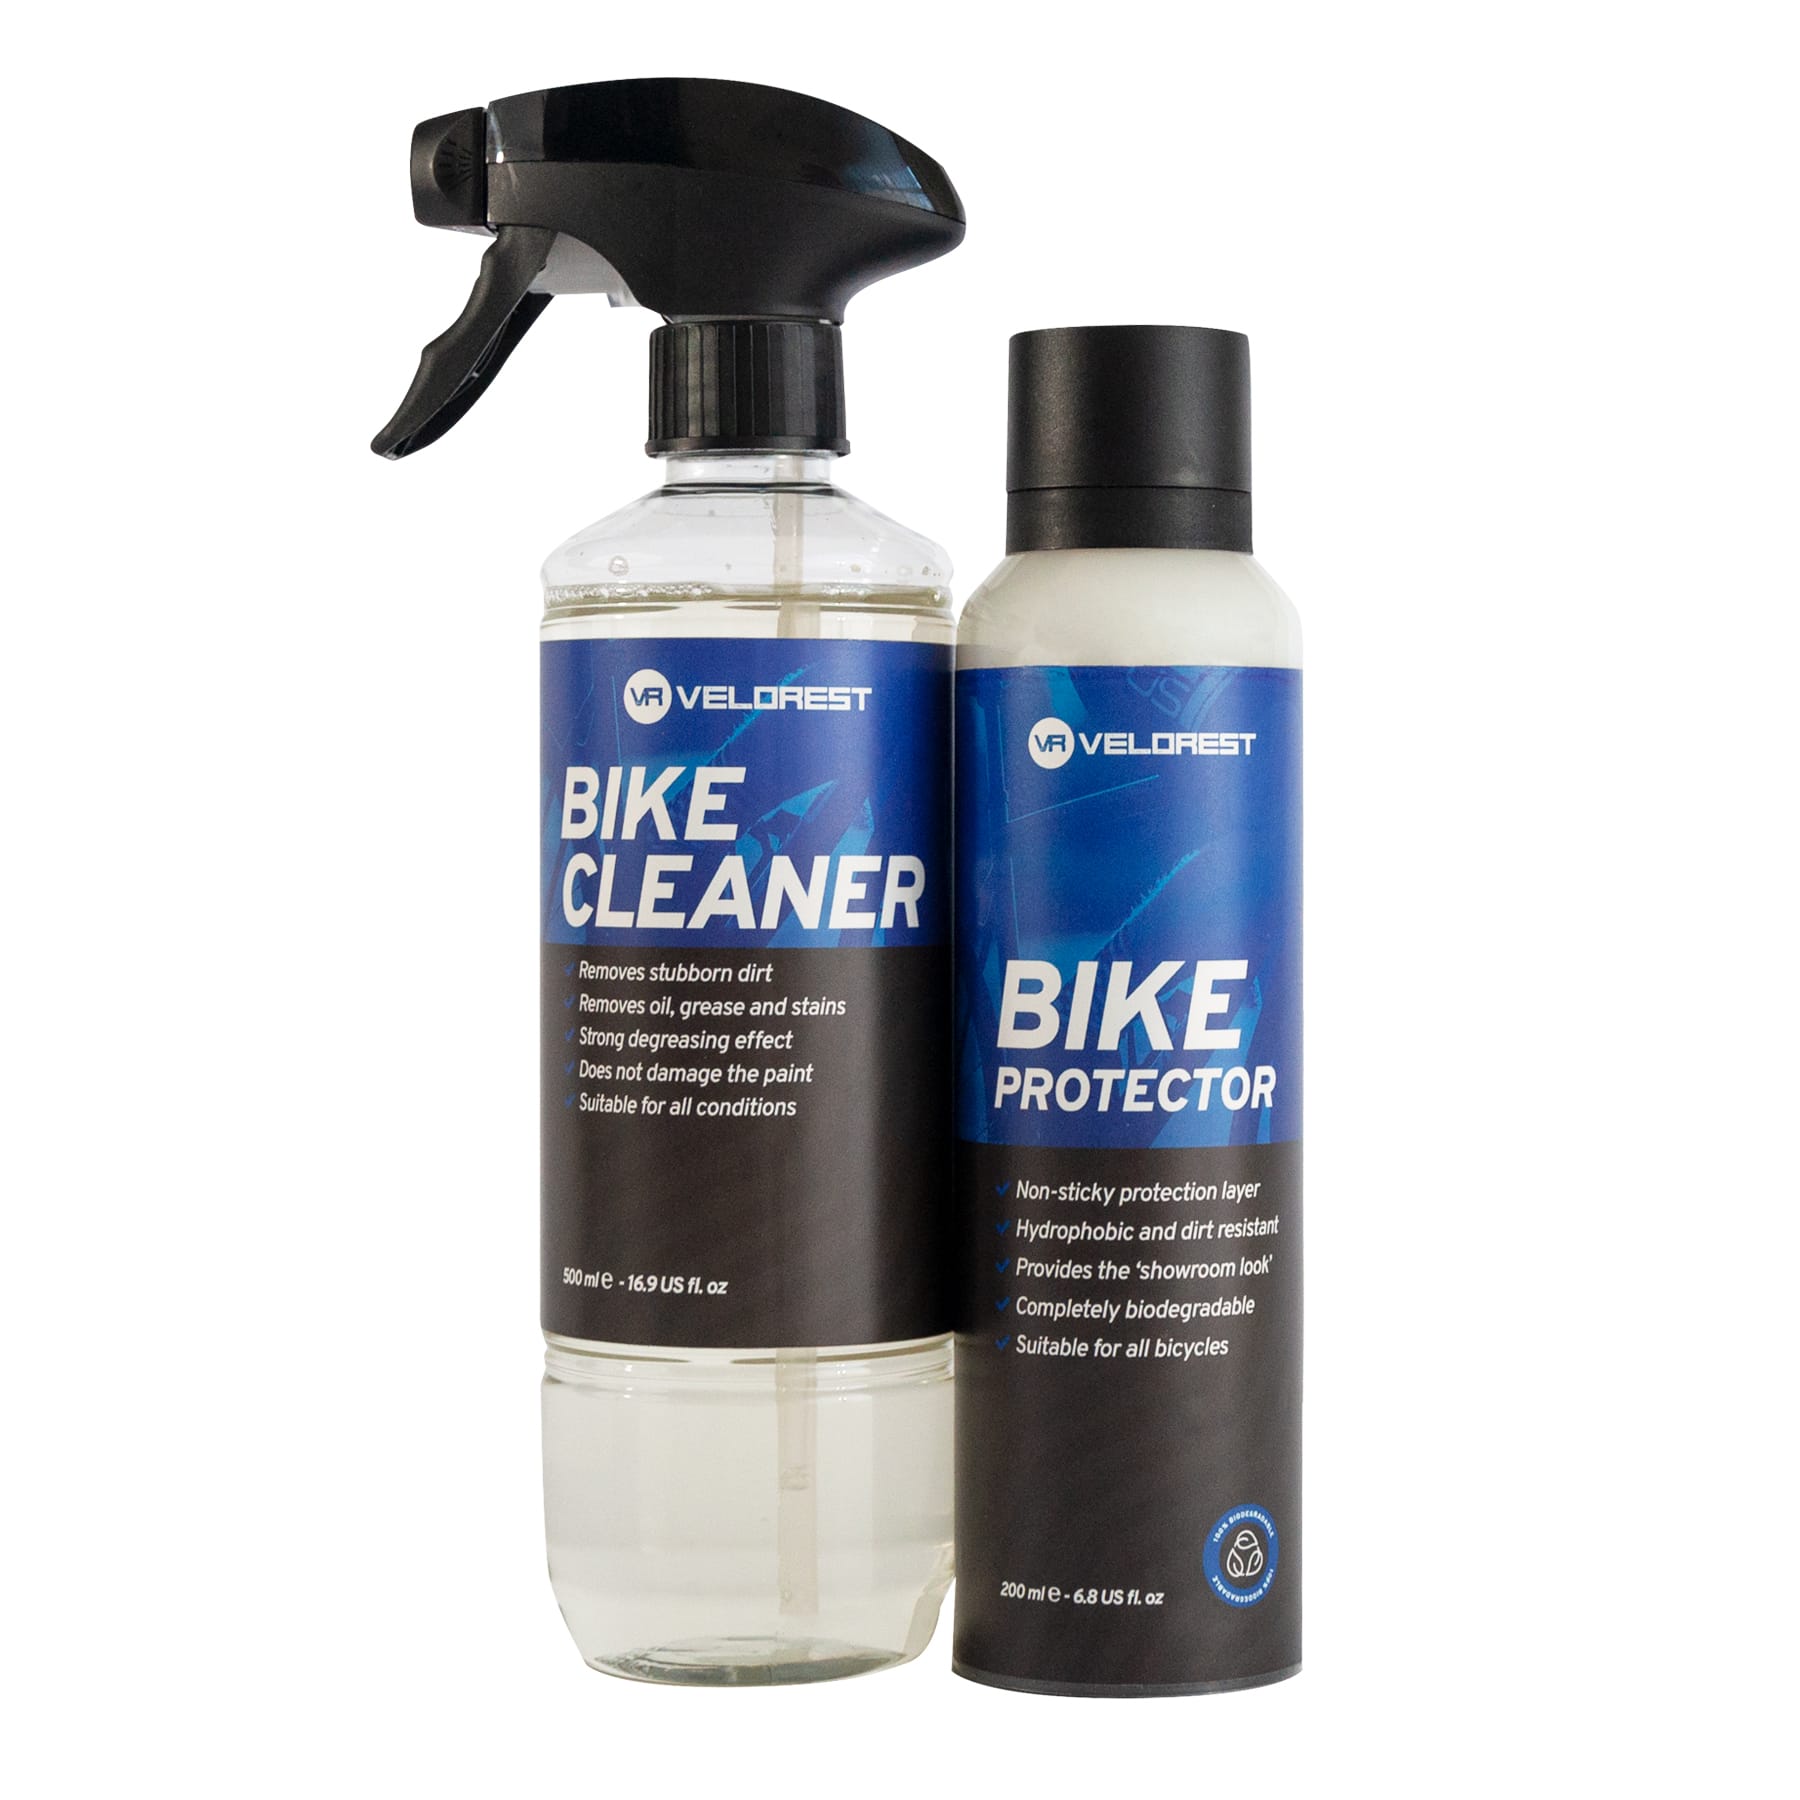 Velorest Bike Care Bundle - Fiets Reiniging & Onderhoud - Fietsreinigingsset - Bike Cleaner - Fiets Schoonmaak Set - Langdurige Bescherming - Showroom Ready